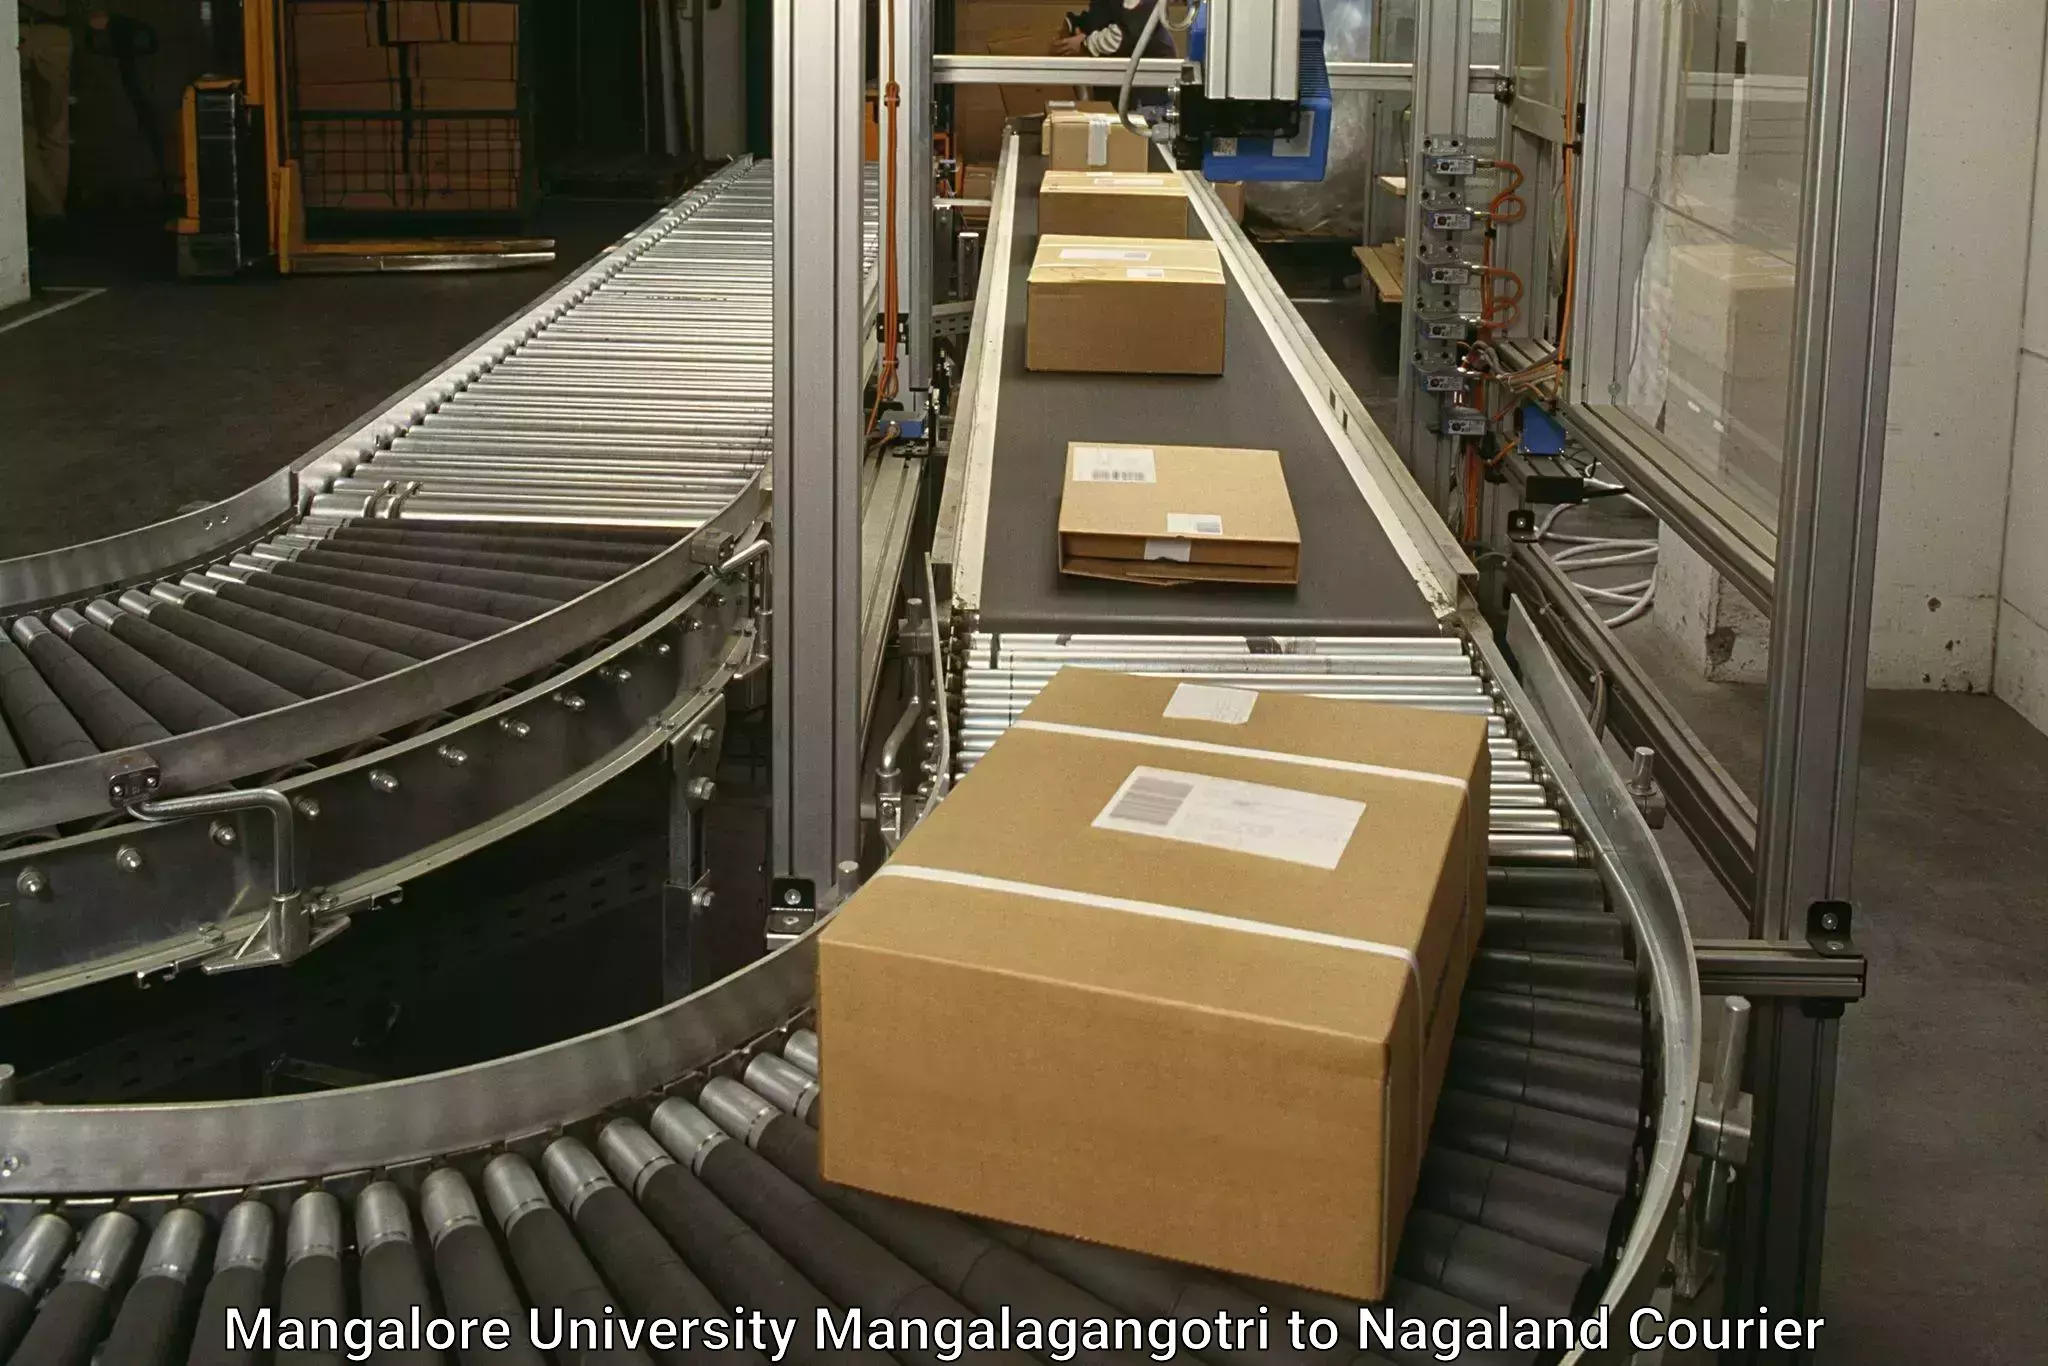 Large package courier Mangalore University Mangalagangotri to Mon